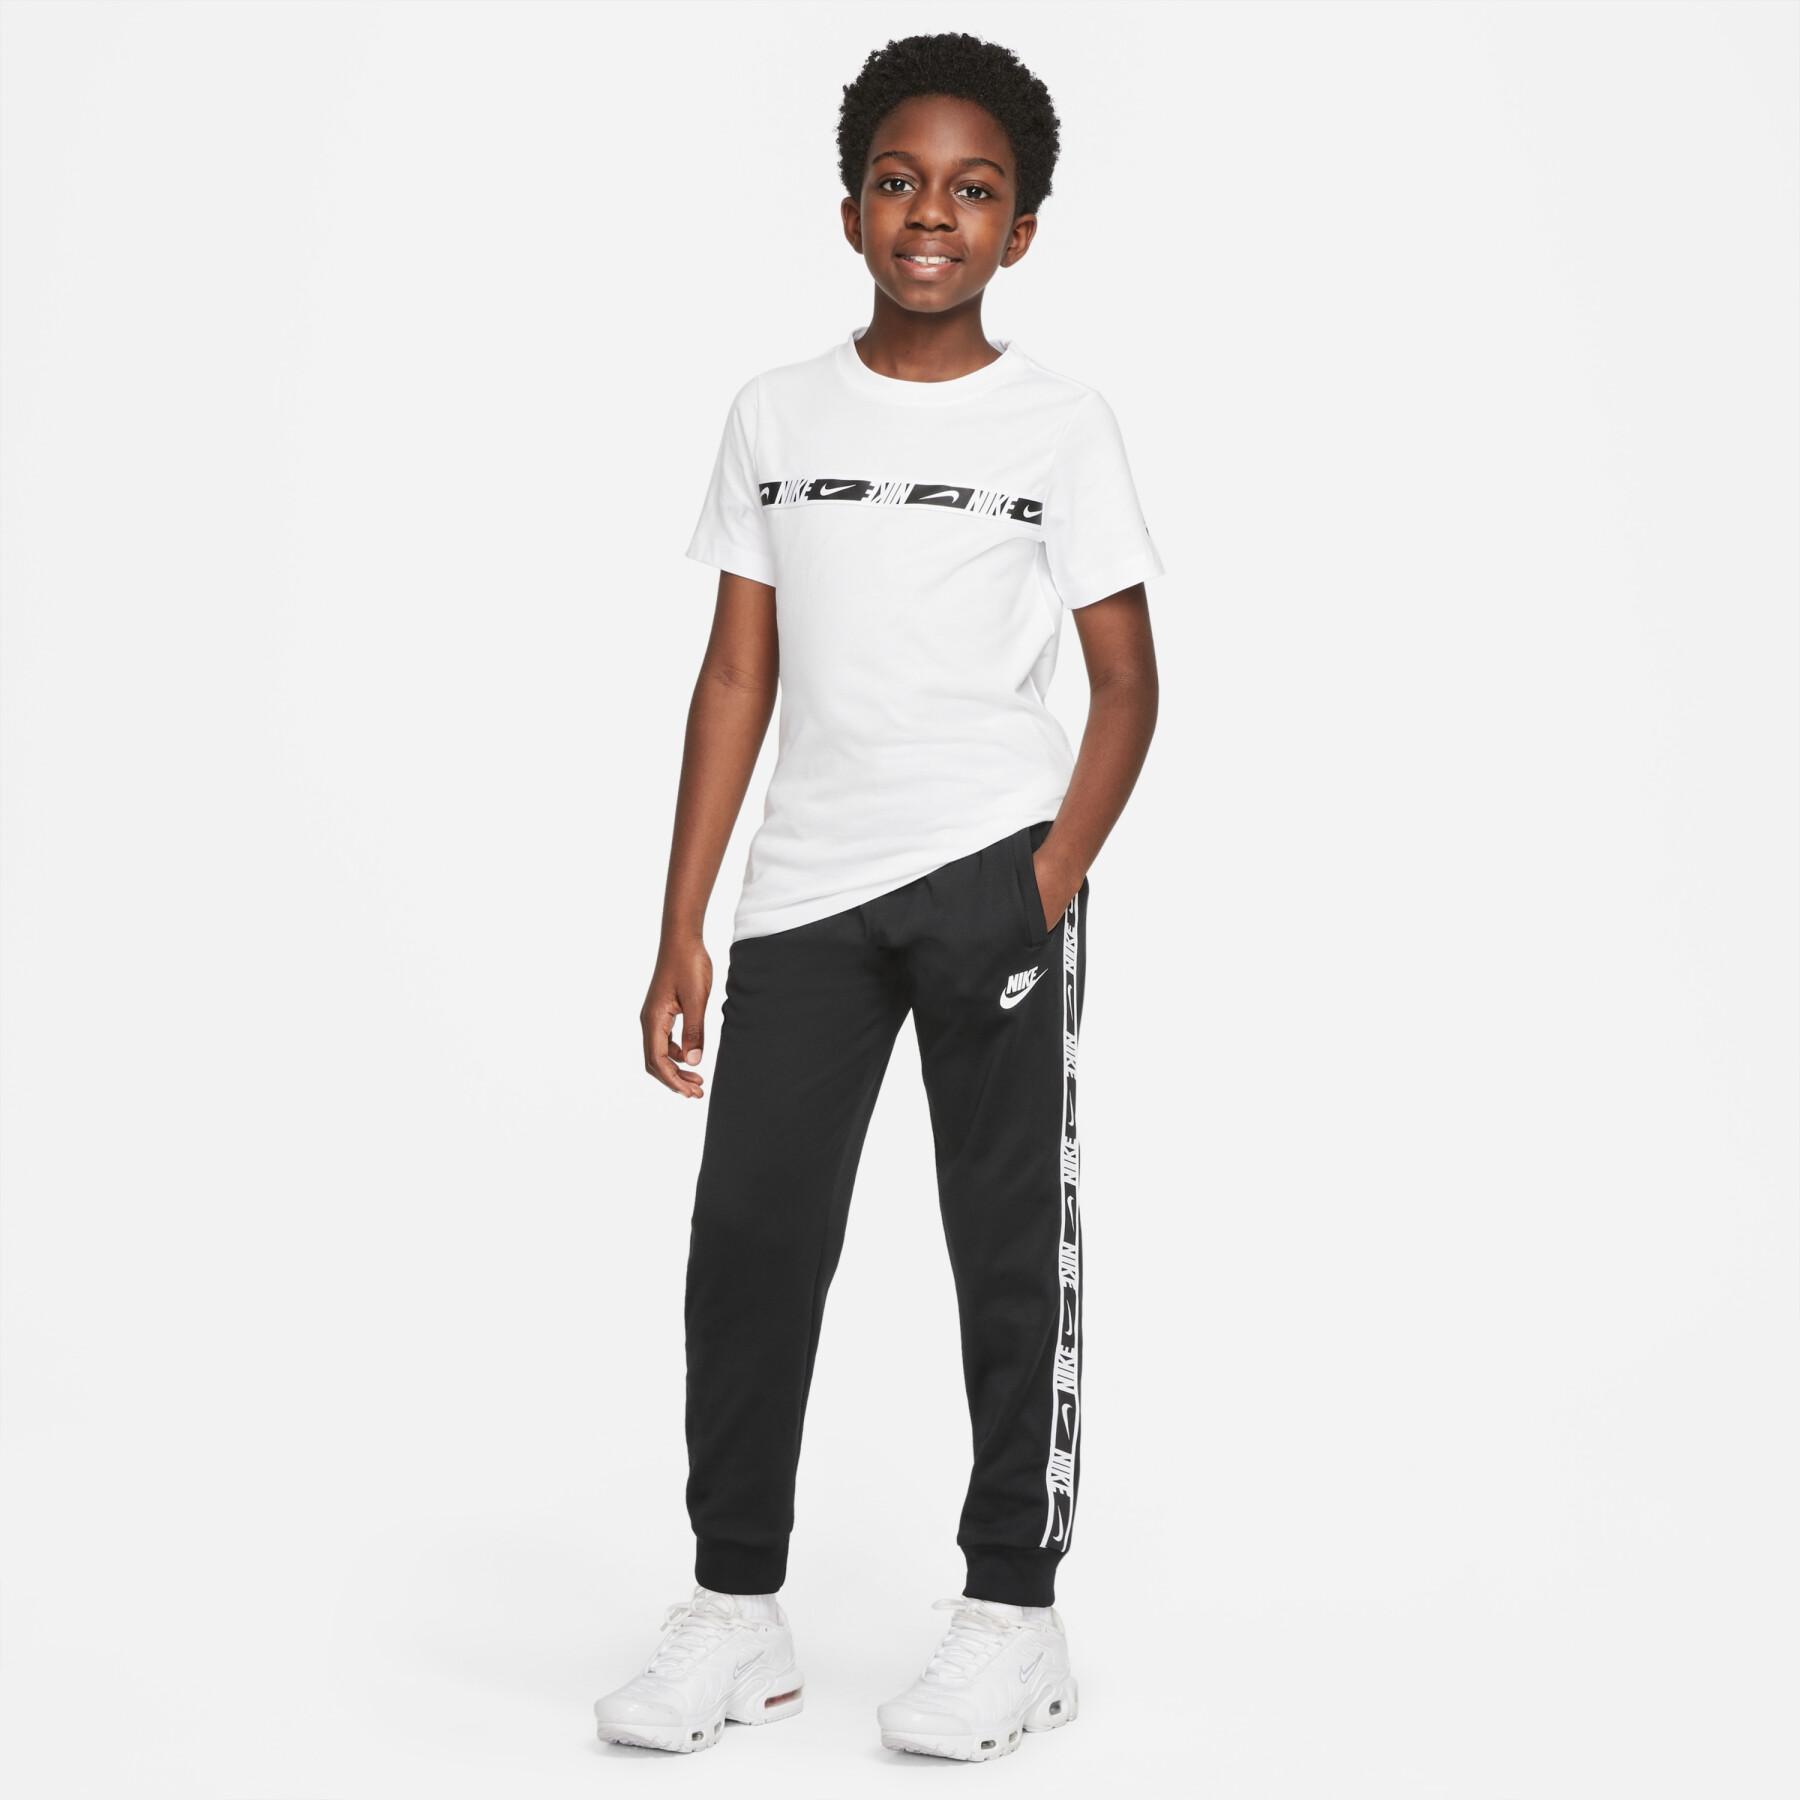 Children's jogging suit Nike Repeat